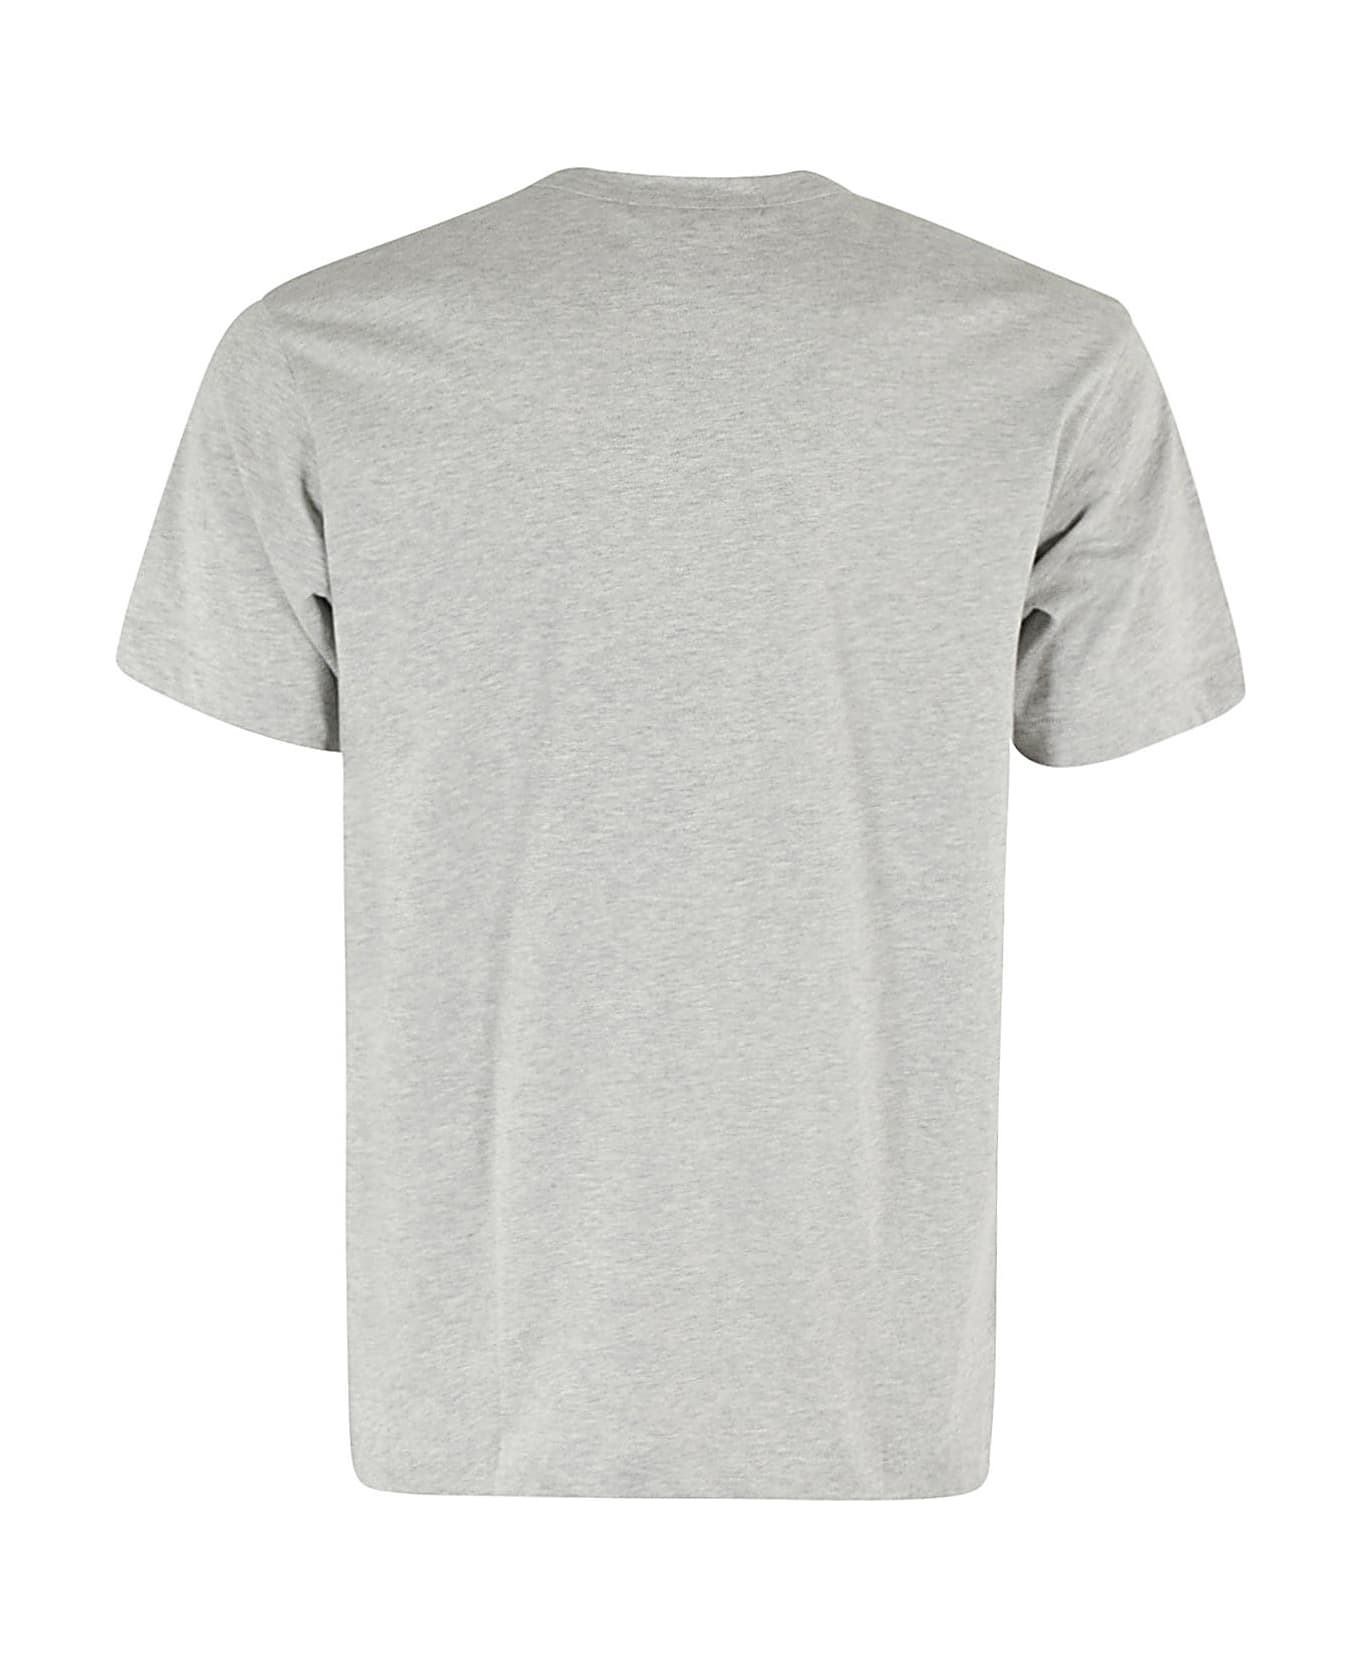 Comme des Garçons Shirt T Shirt Knit - Top Grey